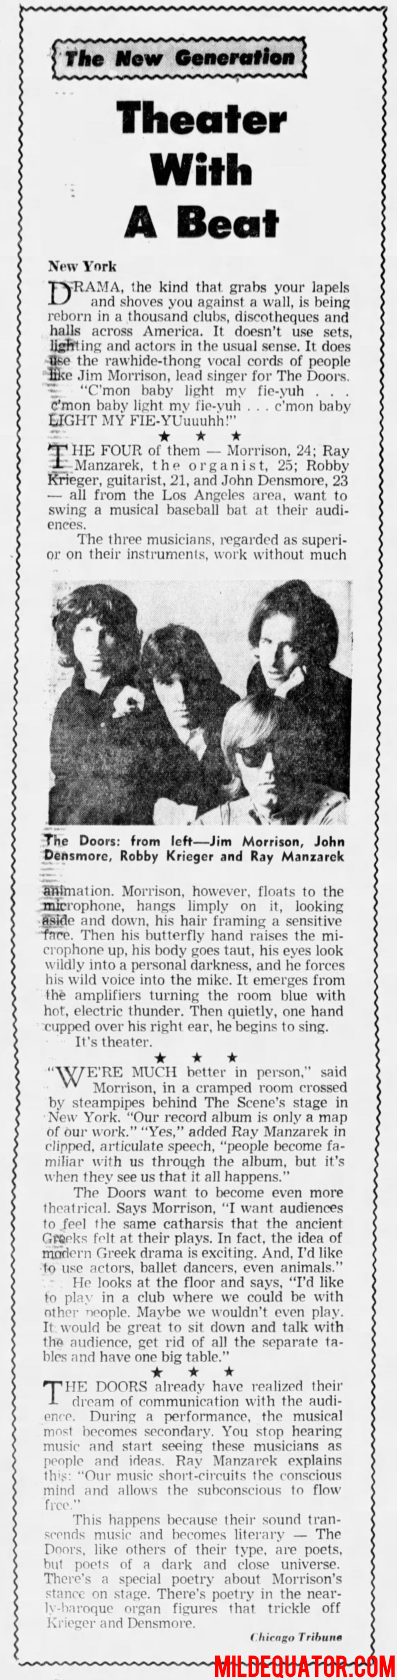 The Doors - Steve Paul's The Scene 1967 - Review